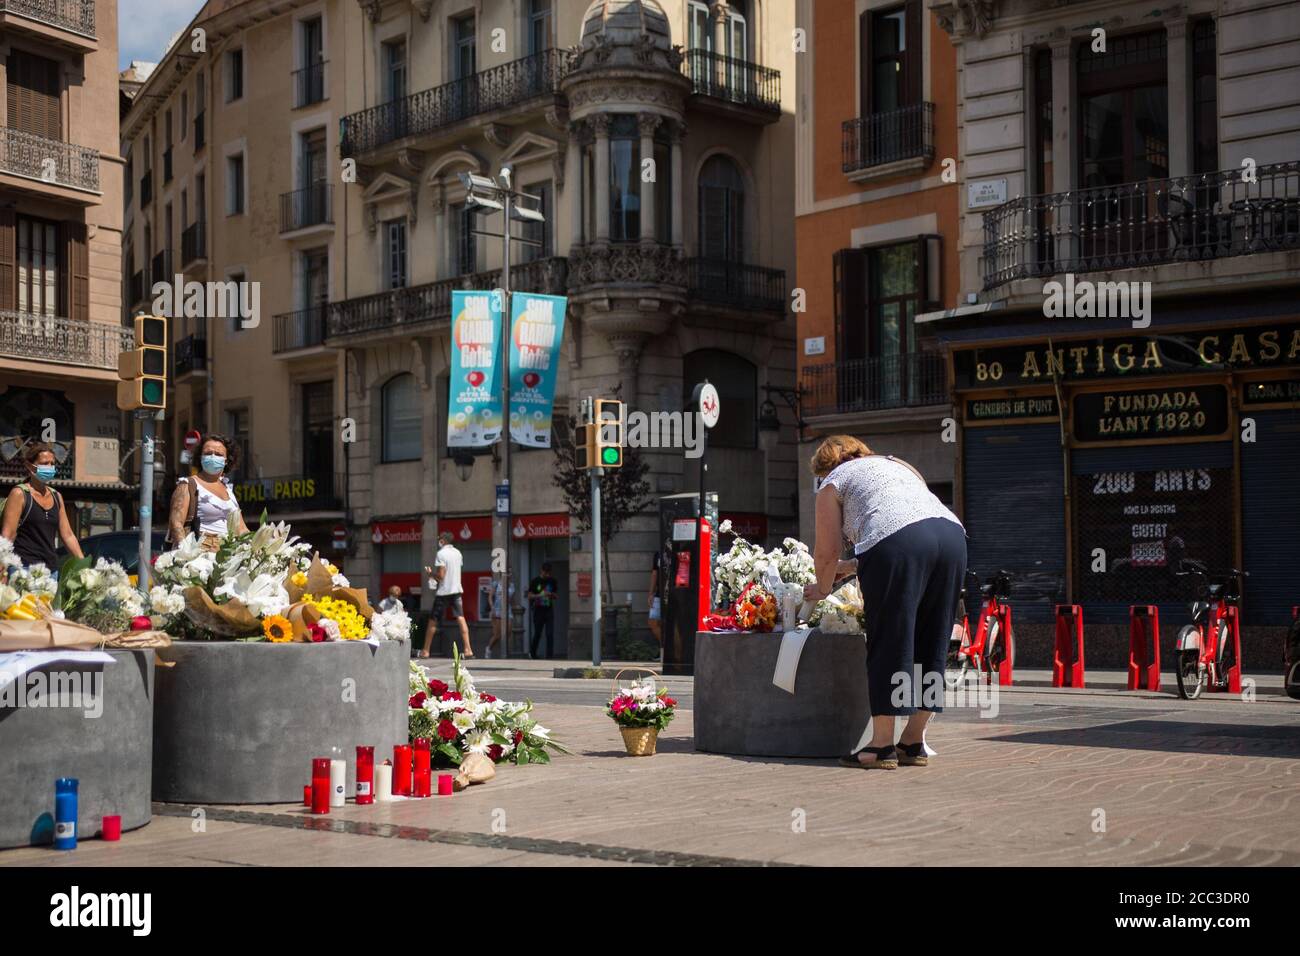 Una donna rende omaggio alle vittime dell'attacco di Barcellona.tre anni dopo l'attacco a Barcellona, un tributo alle vittime è fatto a Las Ramblas. Foto Stock